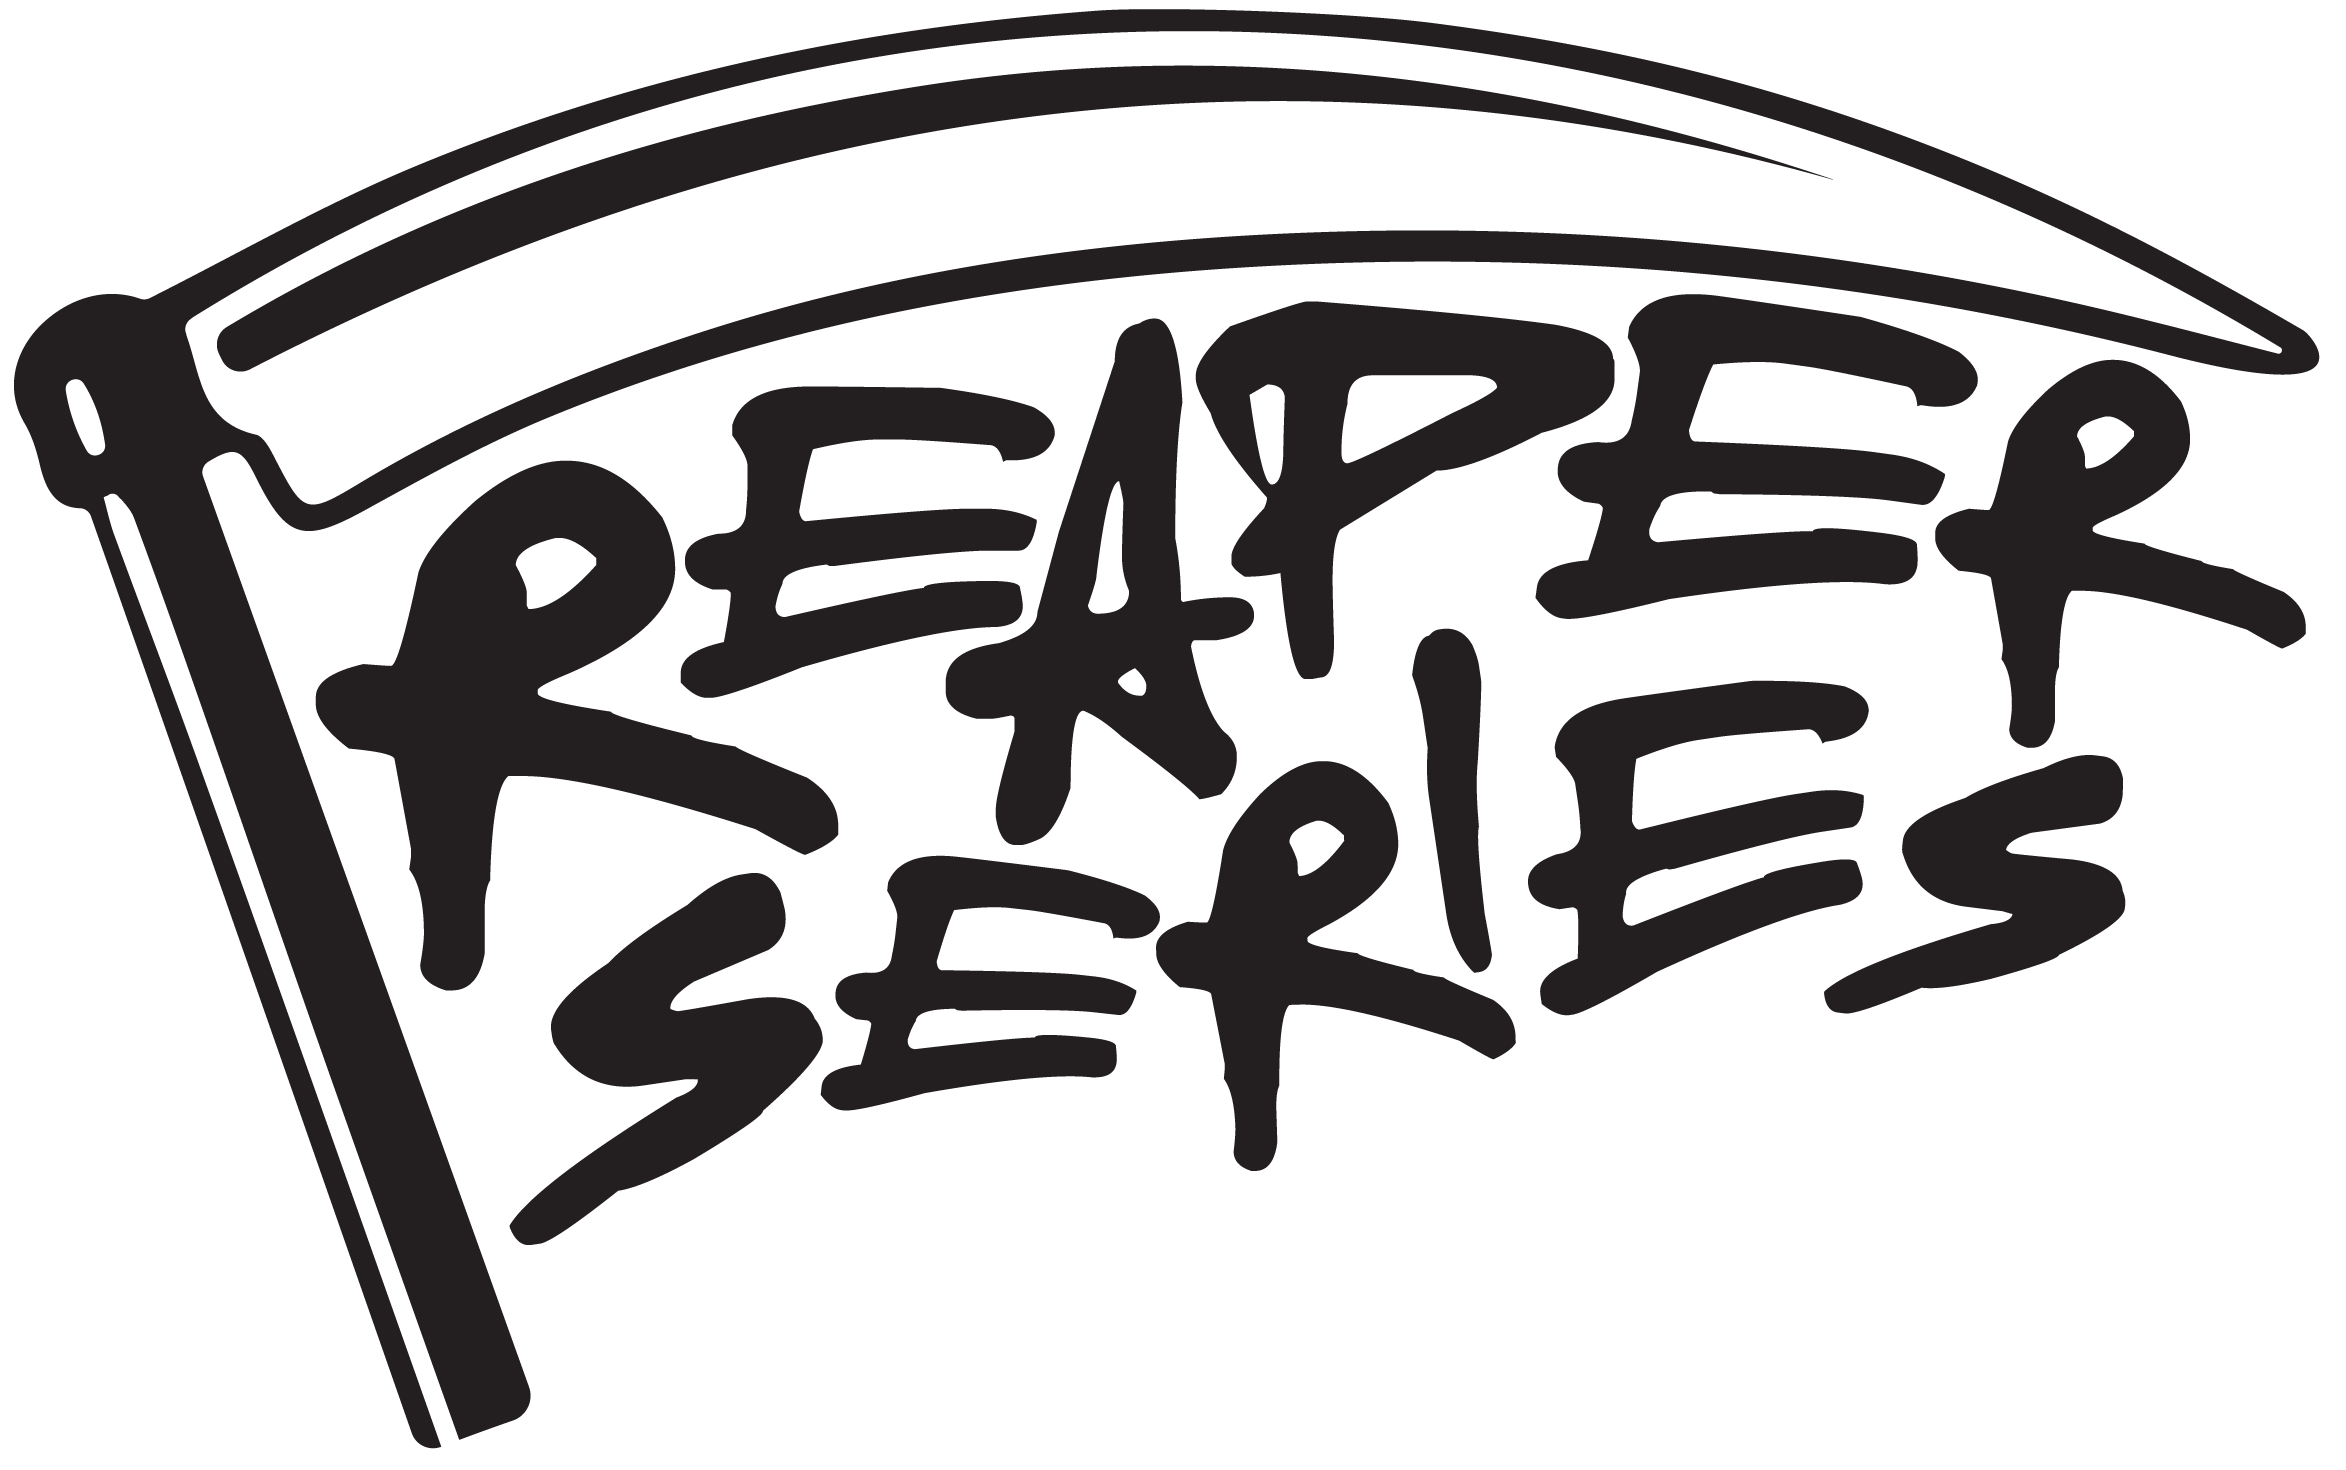 Reaper-6